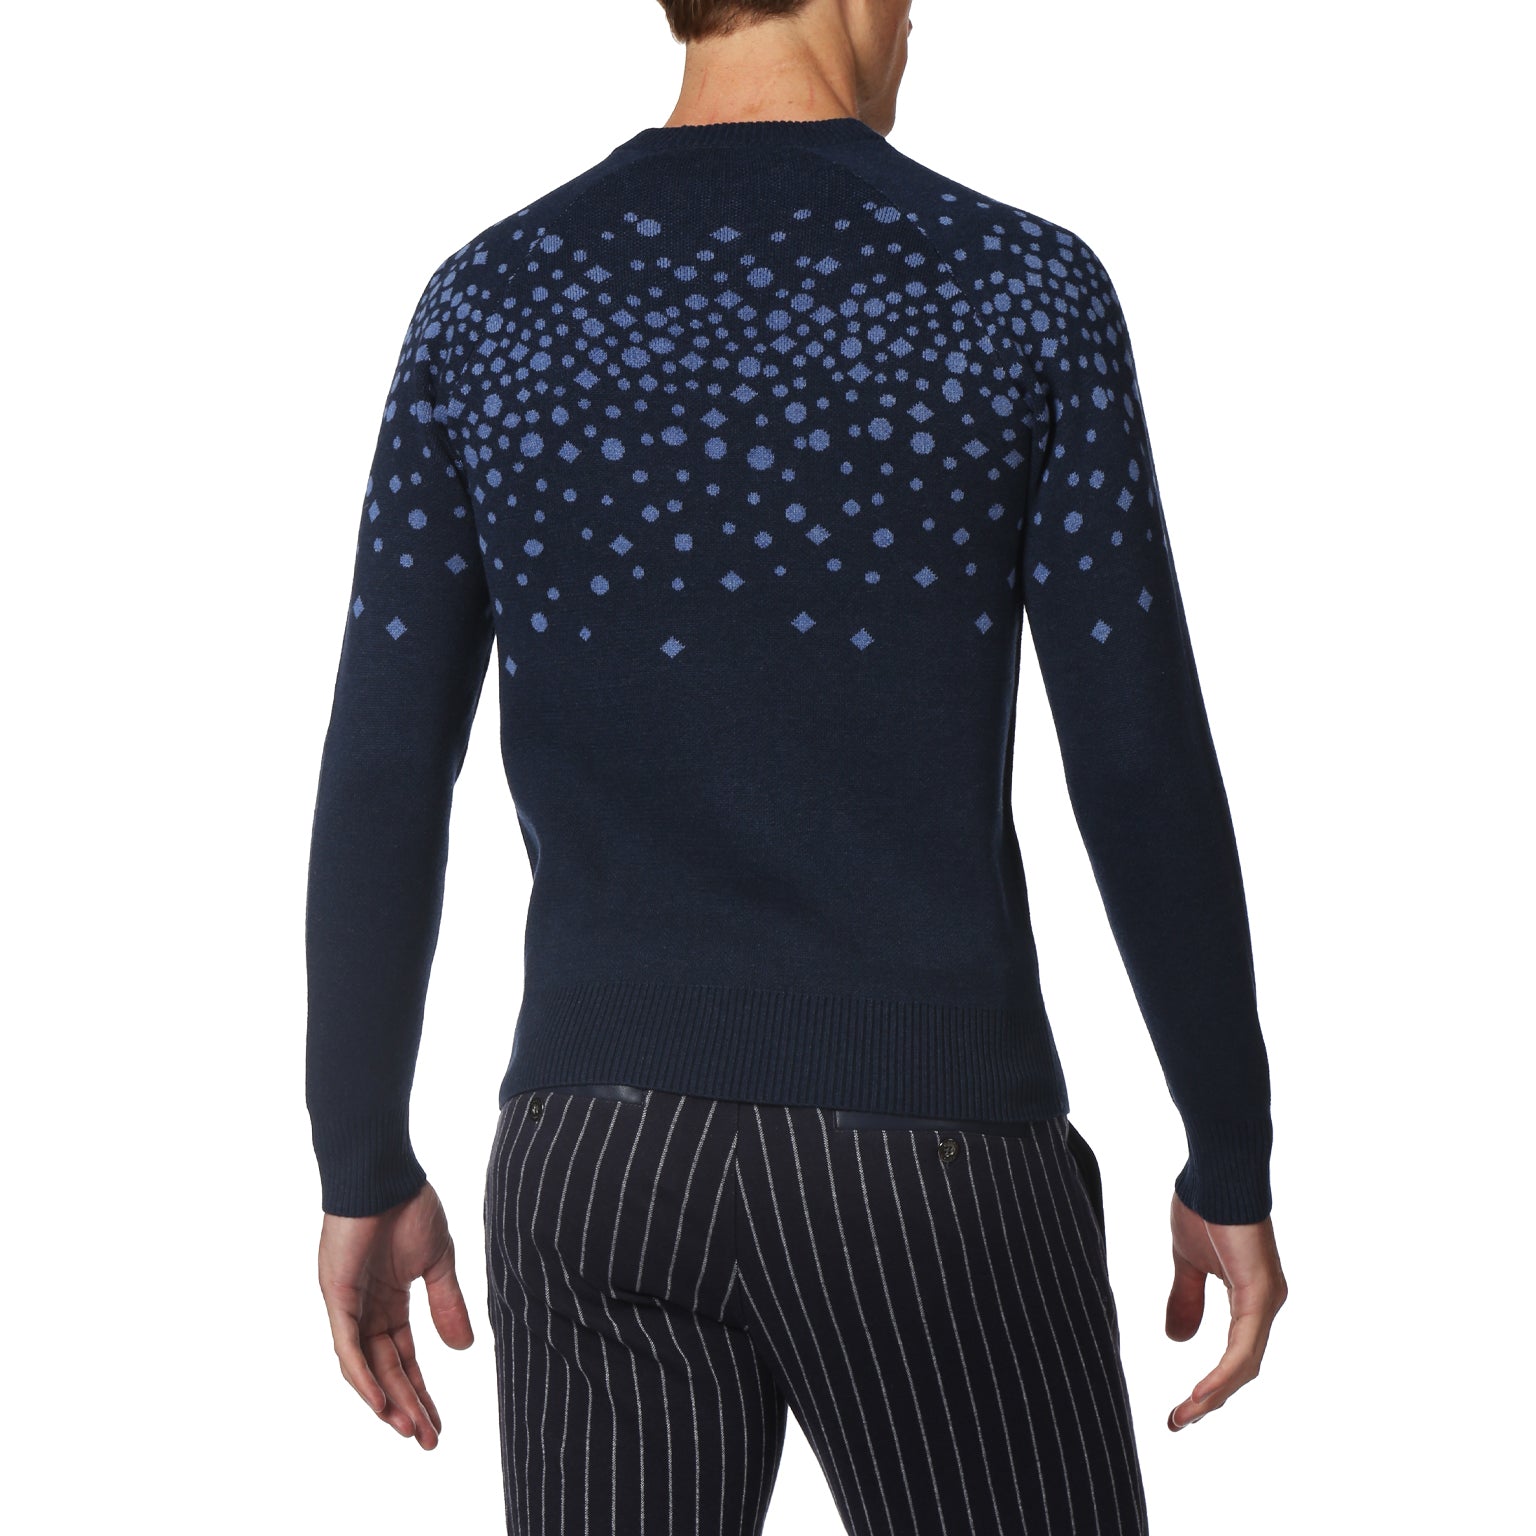 NEW- Triton Blue Starlight Sweater